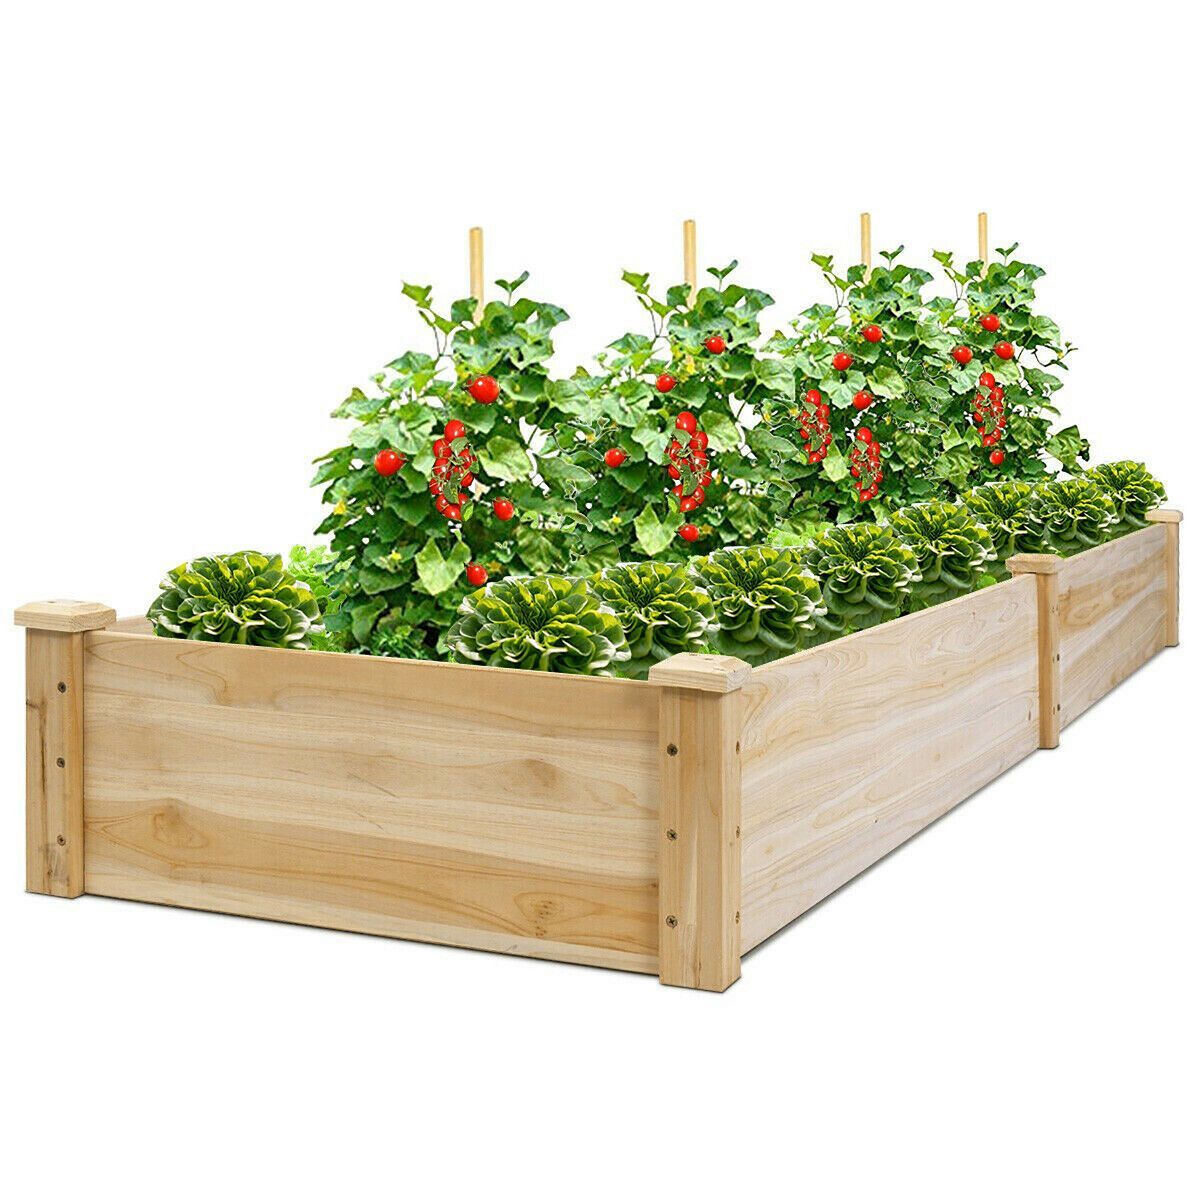 Costway Wooden Vegetable Raised Garden Bed Backyard Patio Grow Flowers Planter | Target